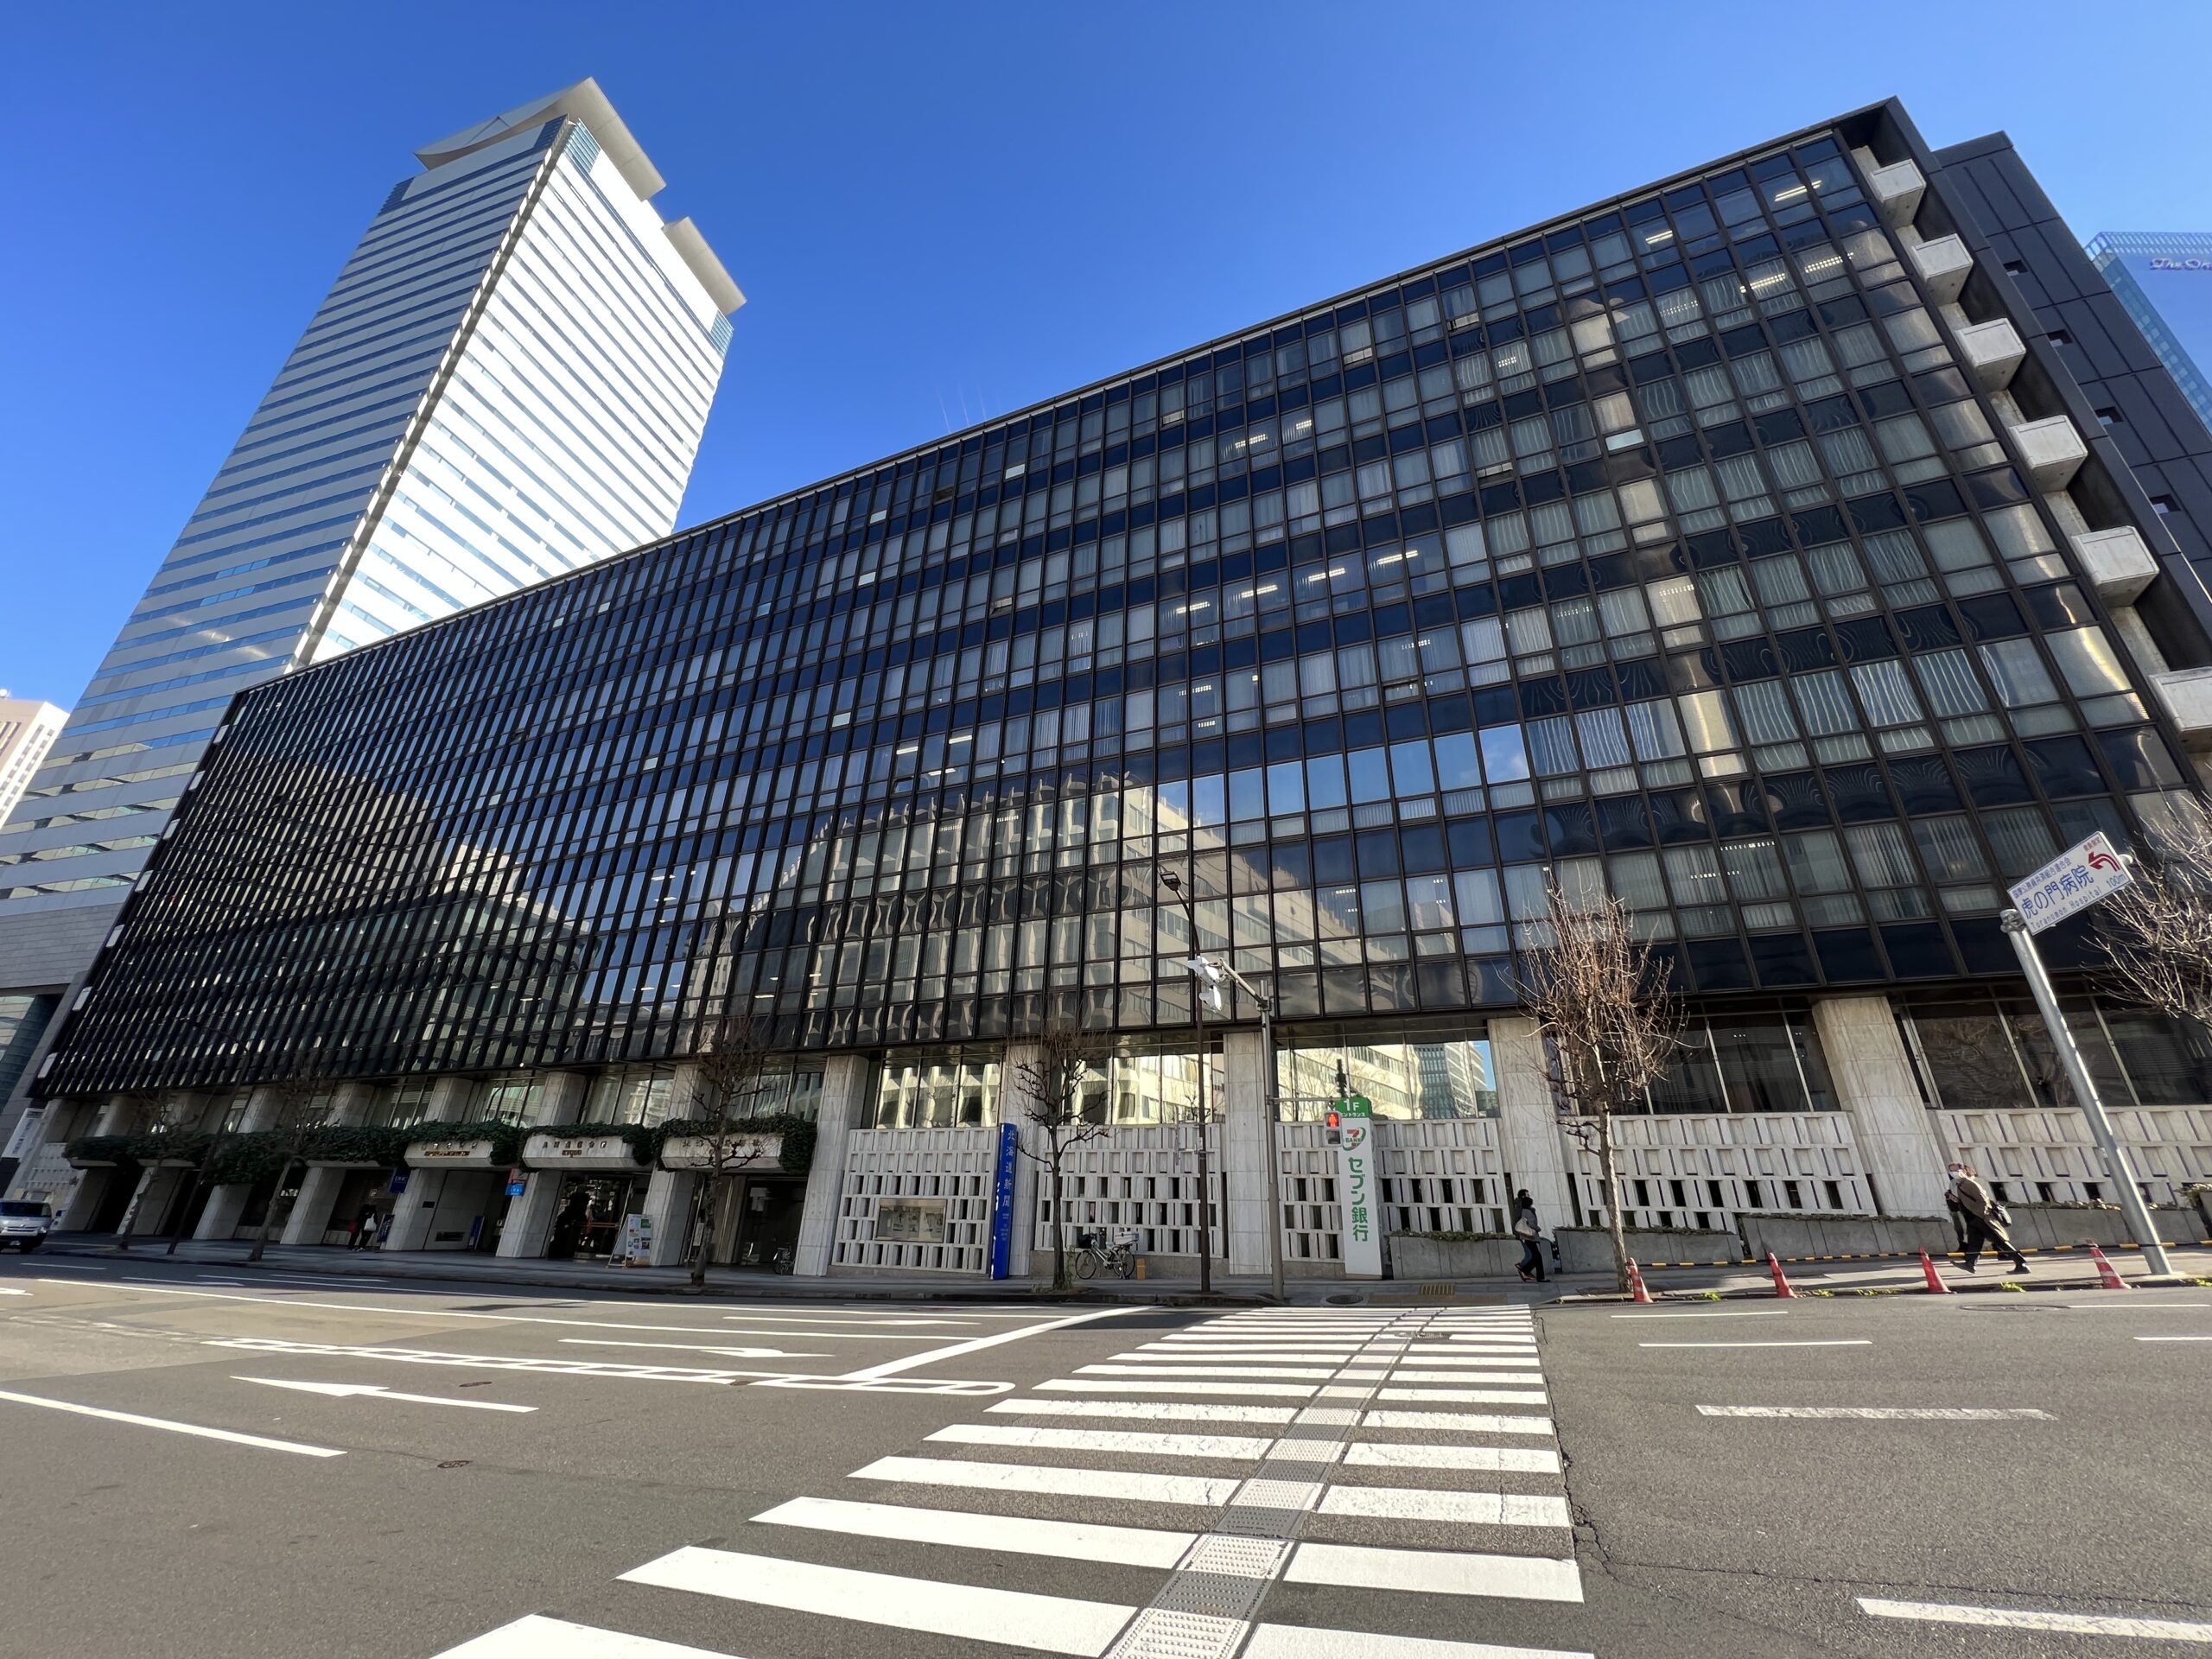 一般社団法人 日本レコード協会の本社が入居するビルの写真